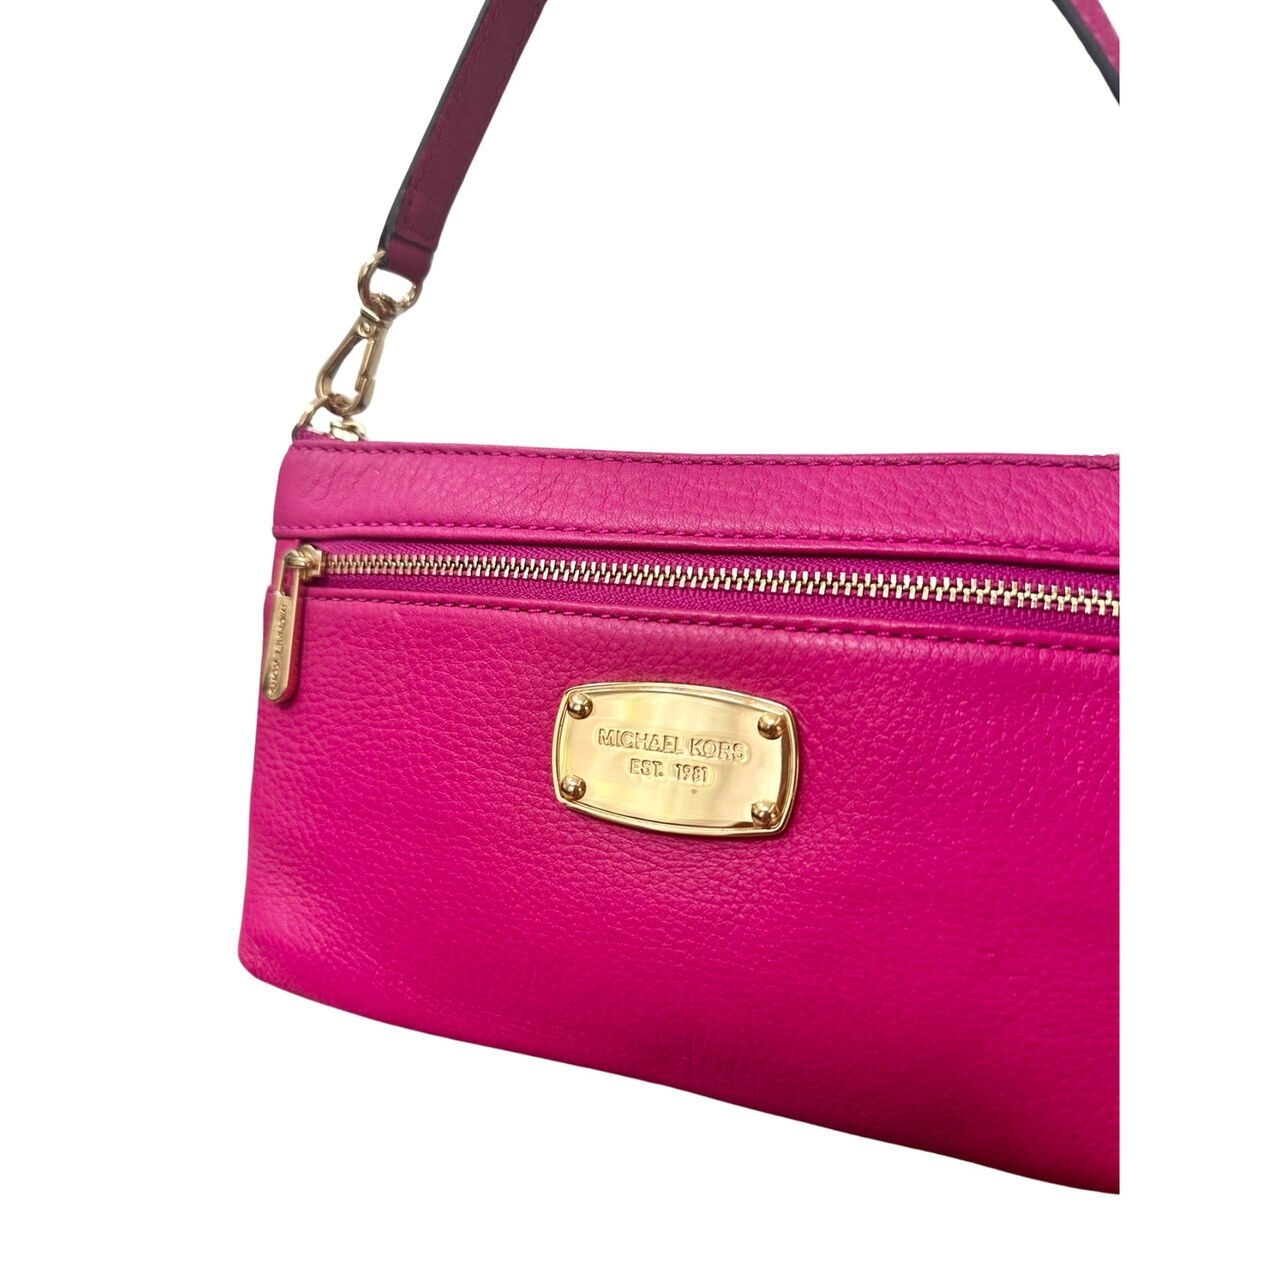 Michael Kors Pink Handbag